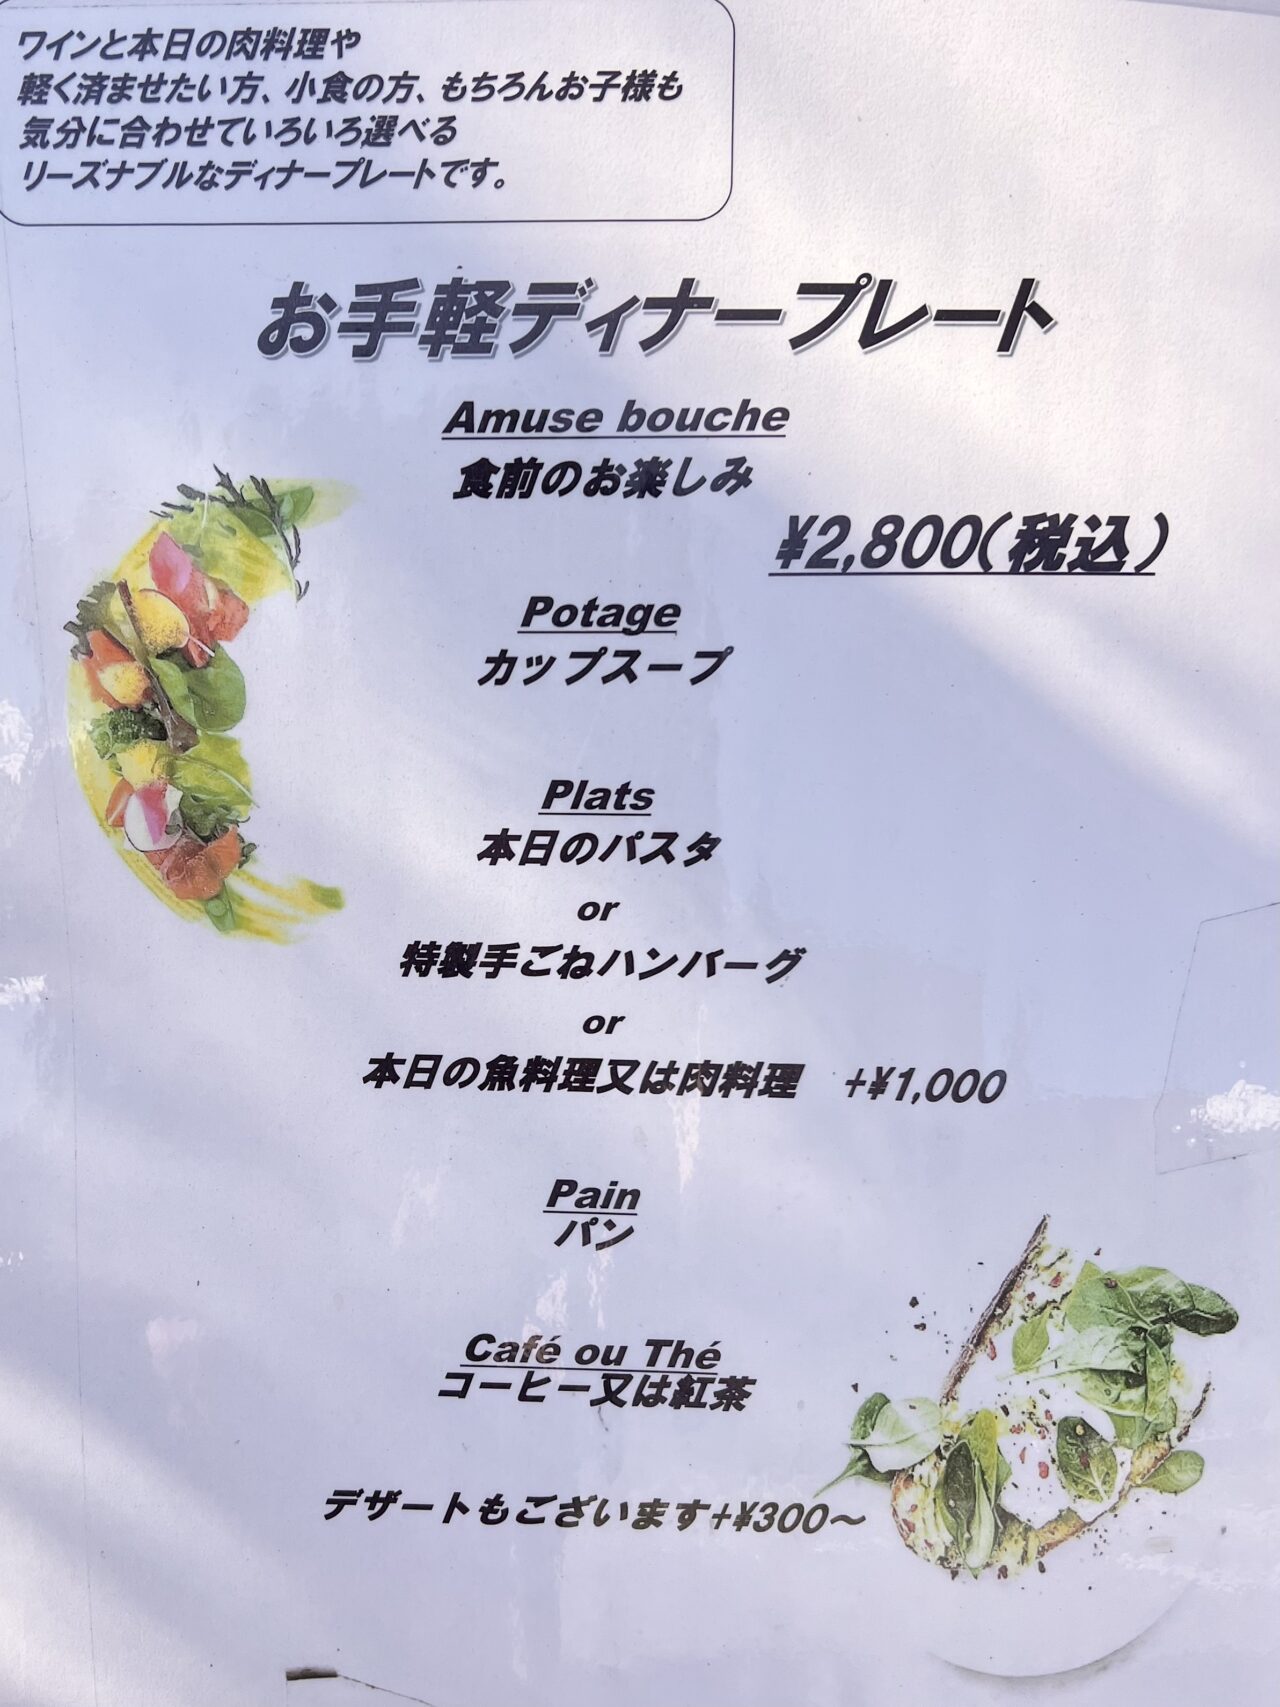 大阪府堺市にあるフレンチレストラン森のお手軽ディナープレートです。